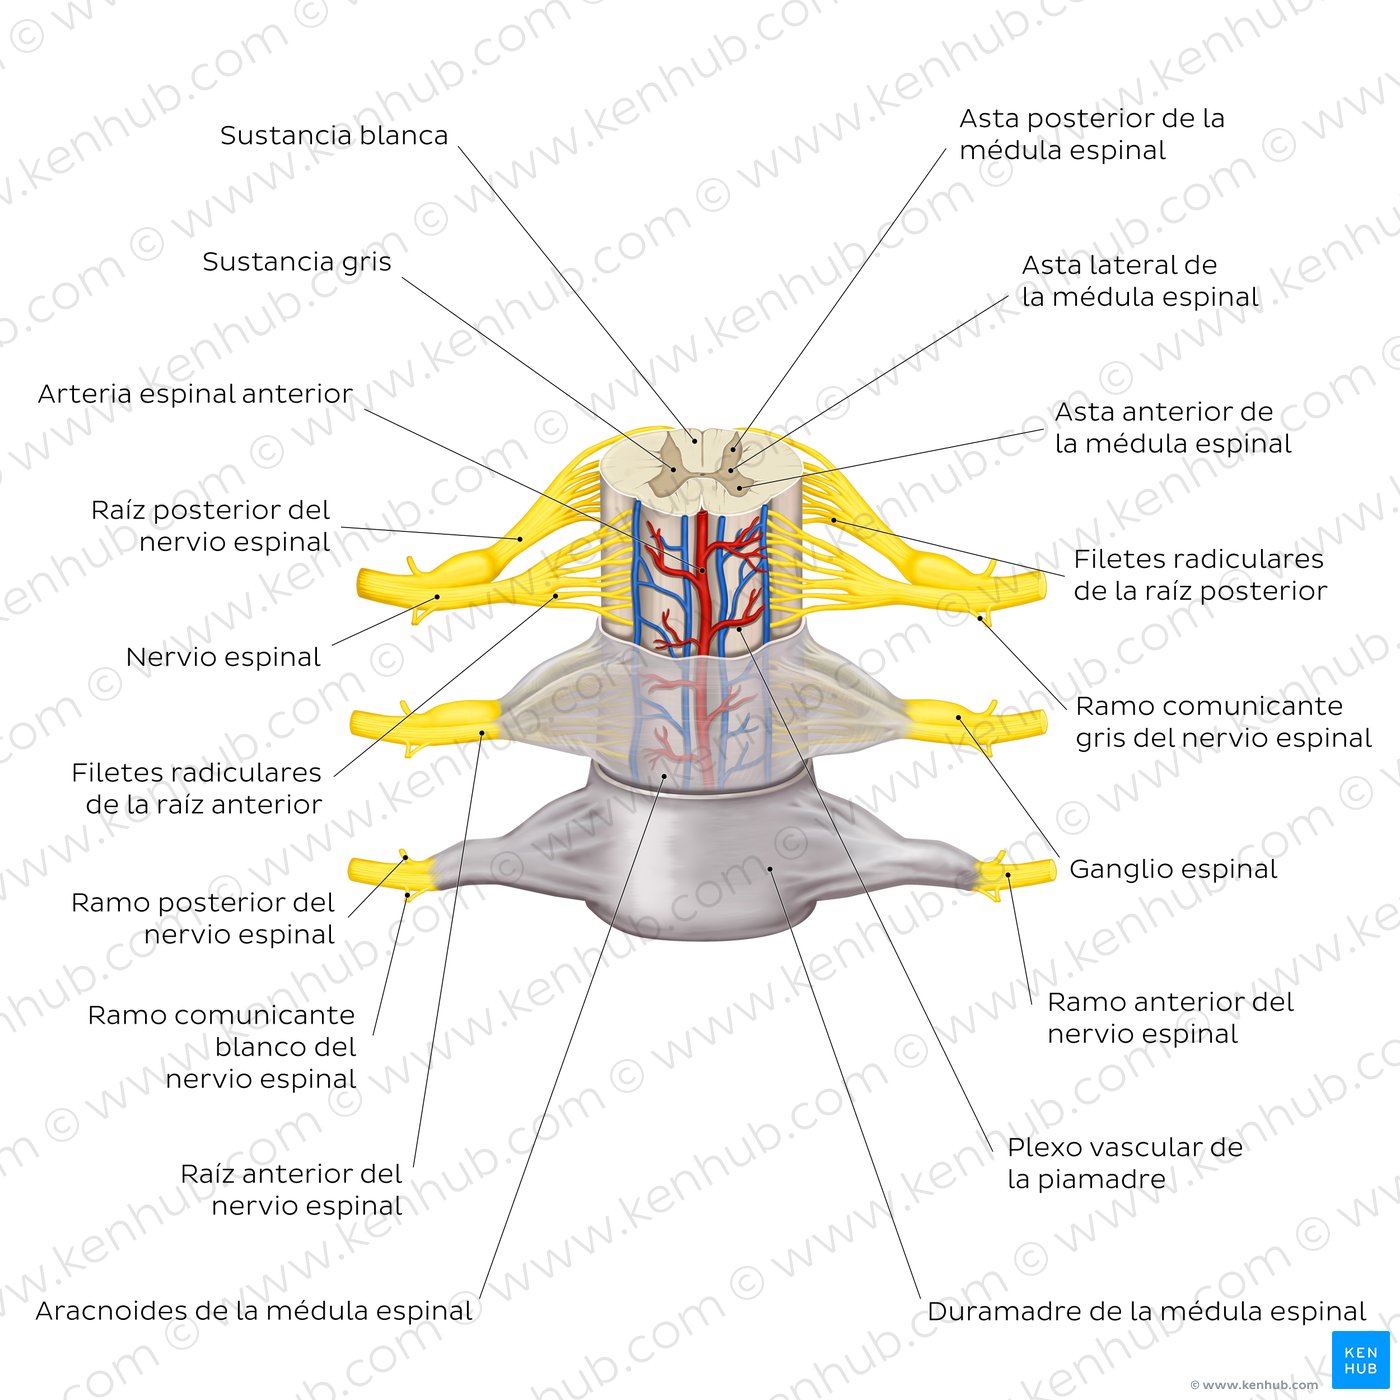 Médula espinal: Anatomía, estructura, vías y función | Kenhub